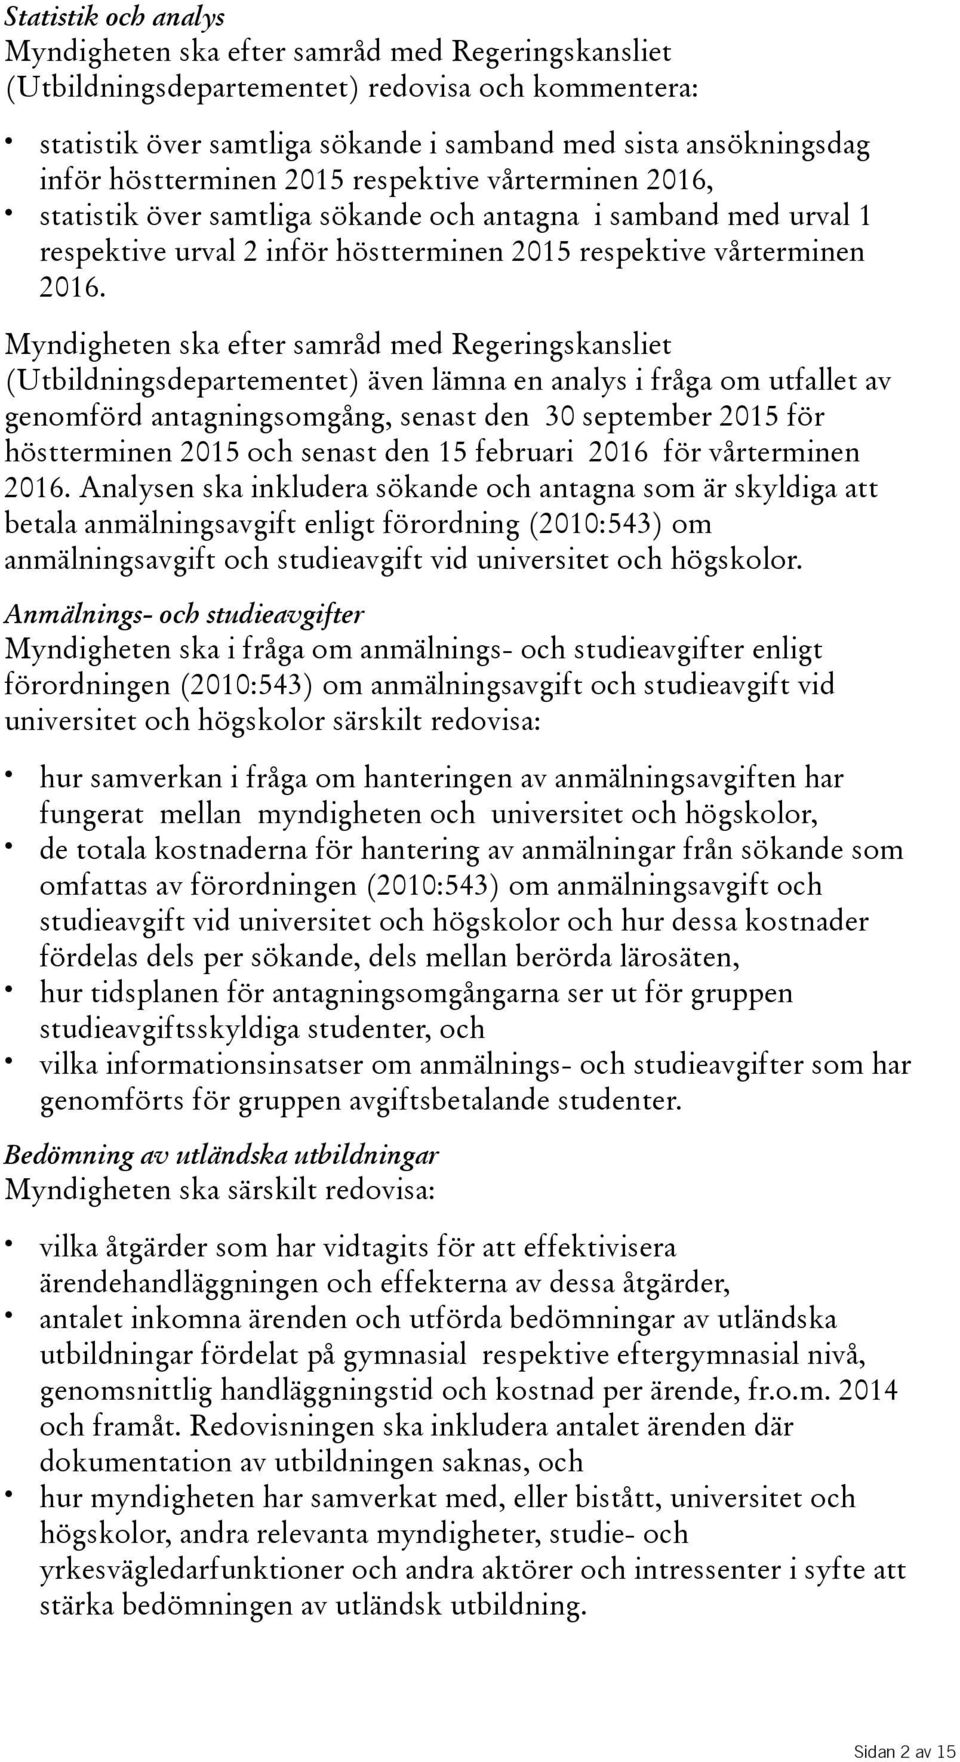 Myndigheten ska efter samråd med Regeringskansliet (Utbildningsdepartementet) även lämna en analys i fråga om utfallet av genomförd antagningsomgång, senast den 30 september 2015 för höstterminen